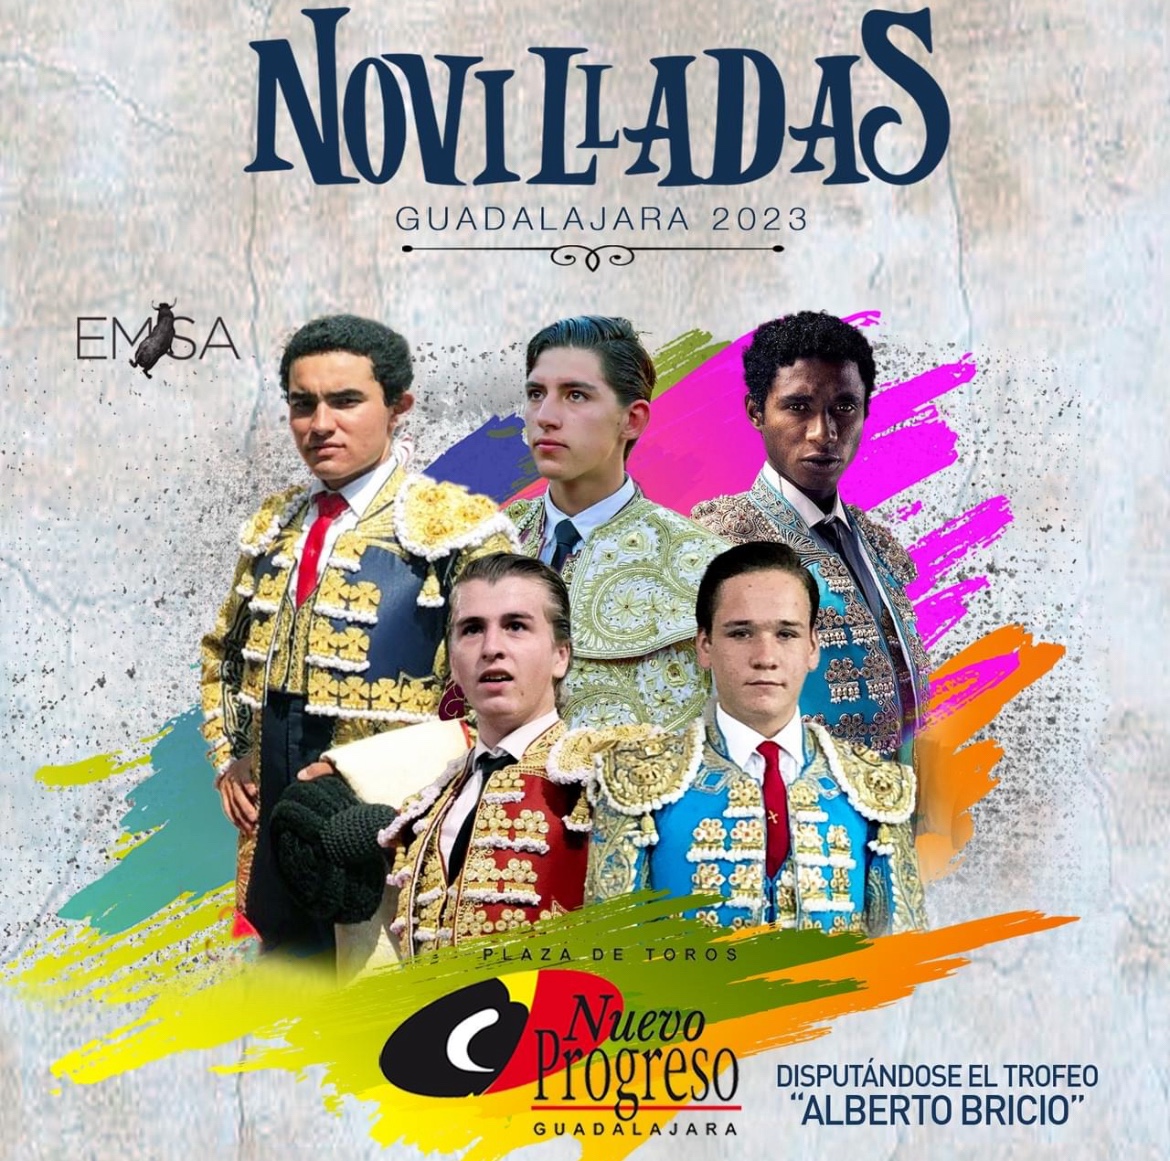 🏆 Temporada de Novilladas – Cartel de Triunfadores 2023 Nuevo Progreso de Guadalajara.